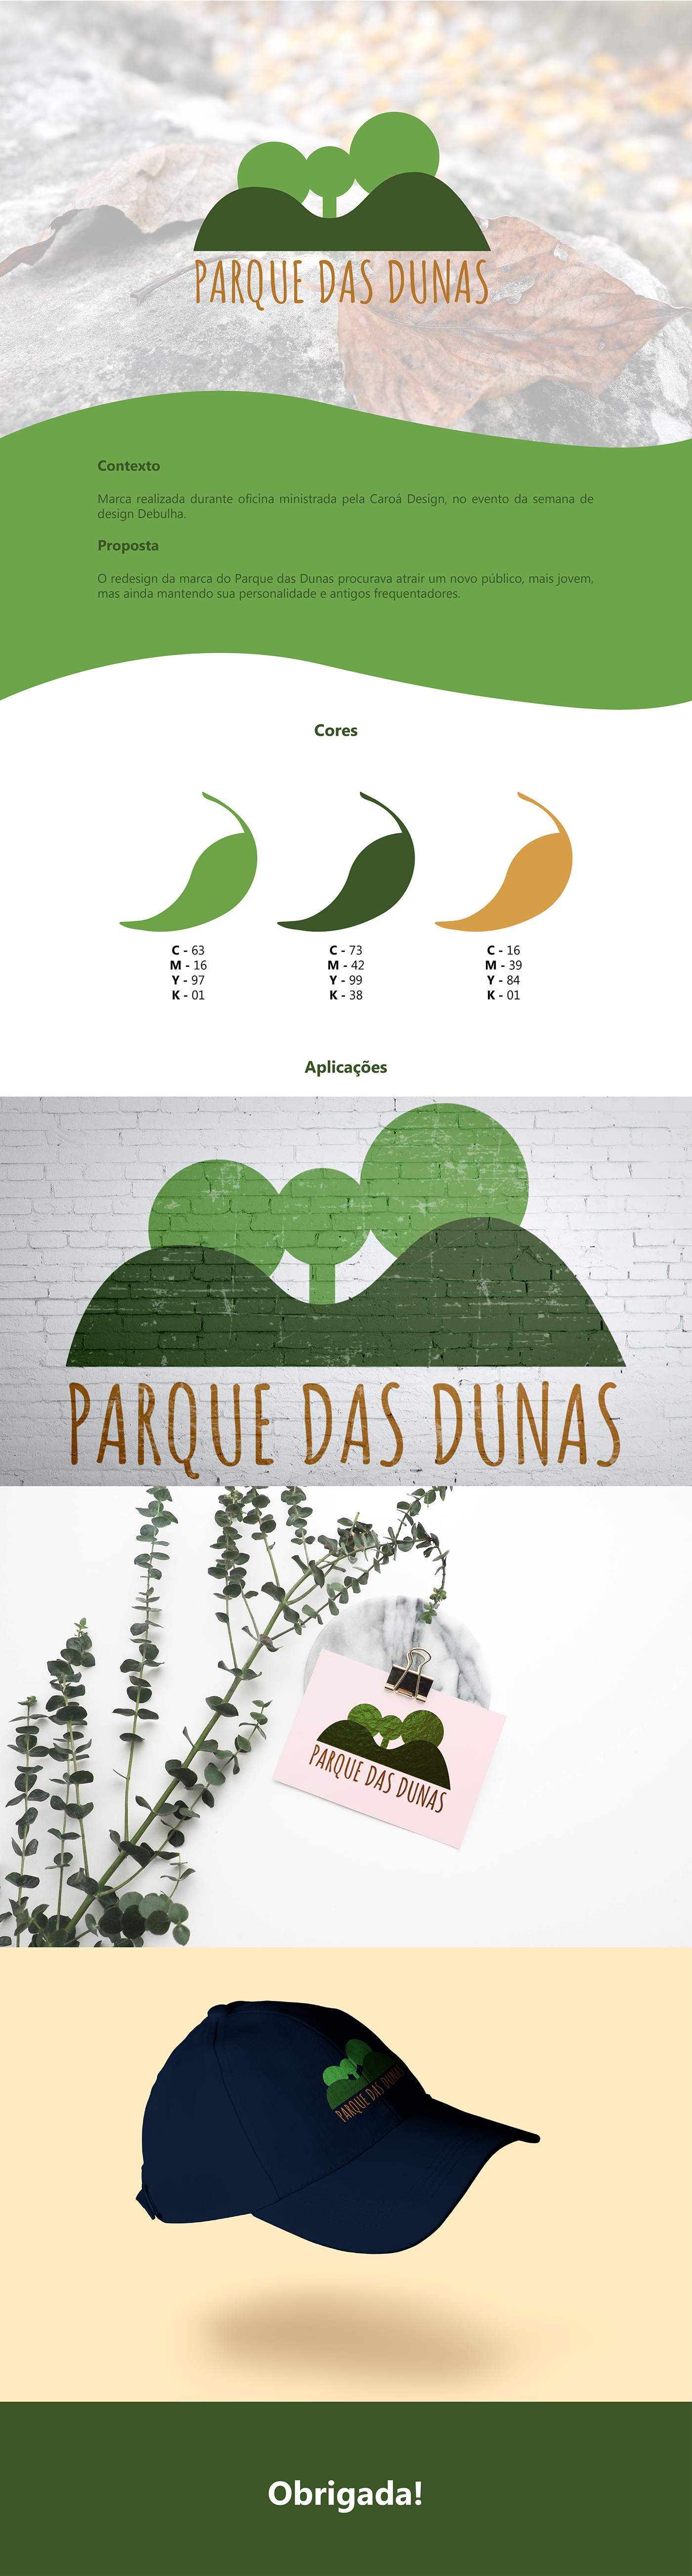 redesign design Park Parque das Dunas natal RN Nature